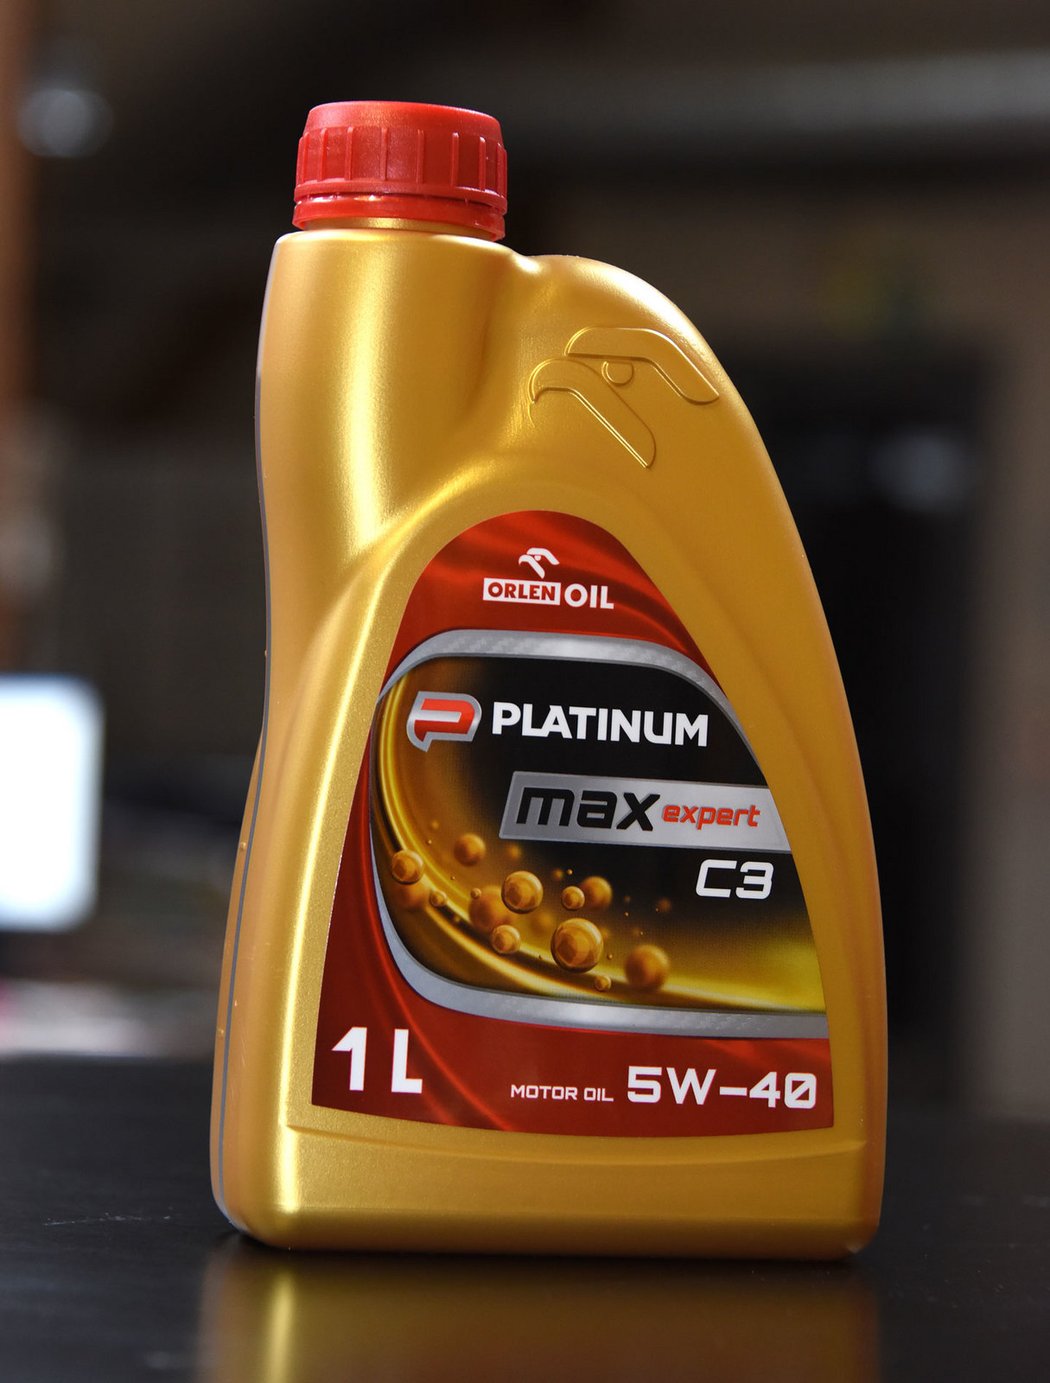 Orlen Oil Platinum Max Expert C3